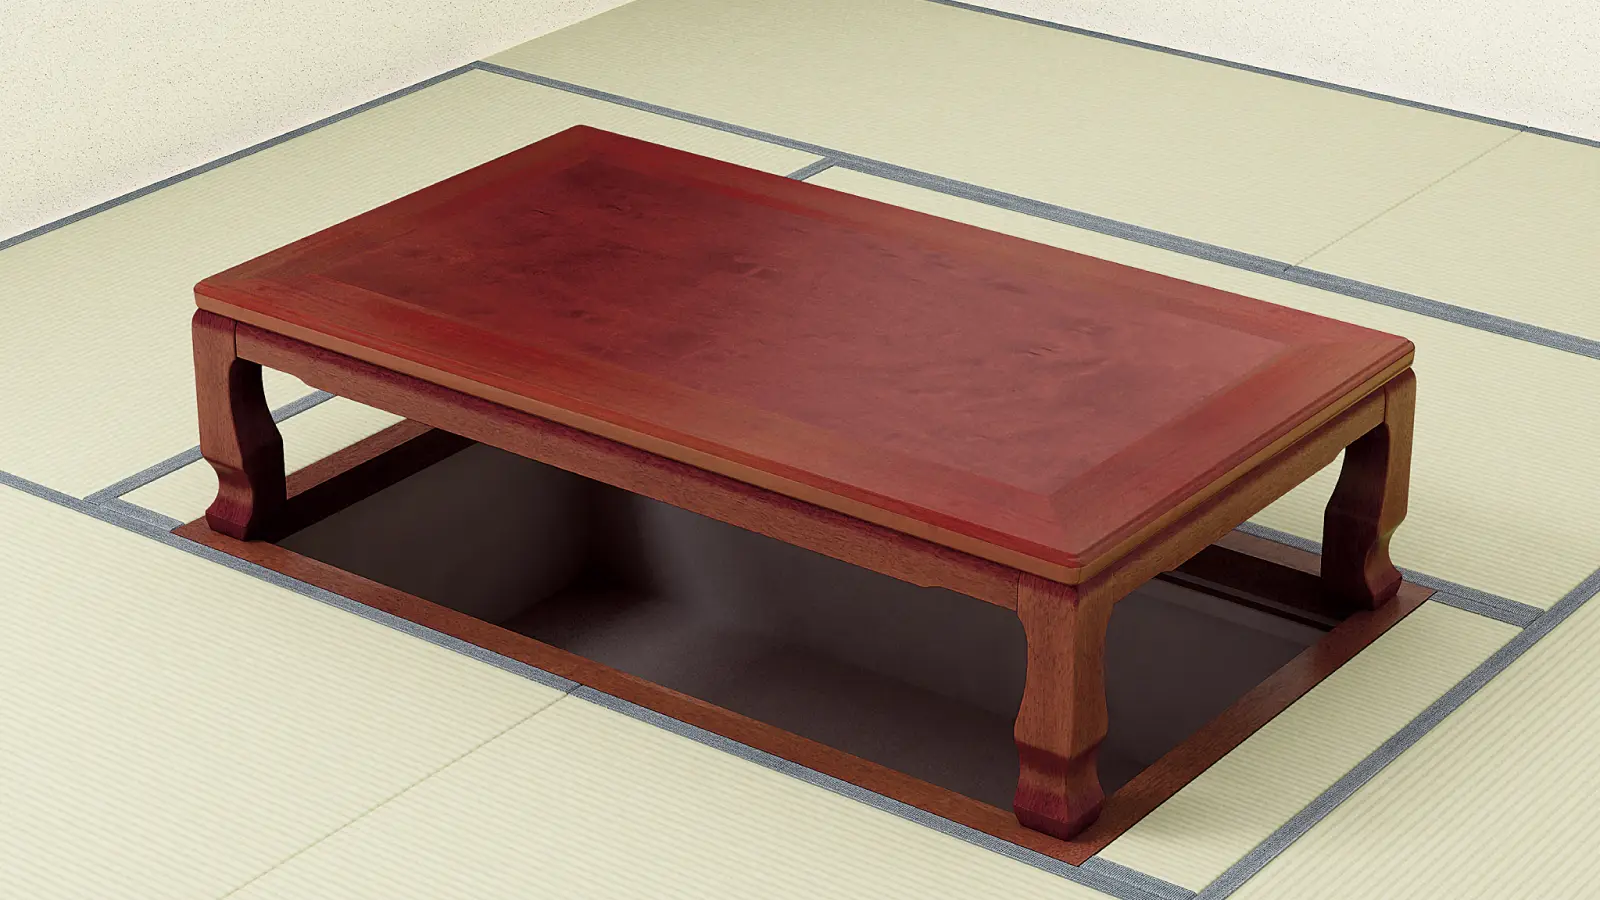 座卓シリーズ 伝統和座卓の製品ページです。